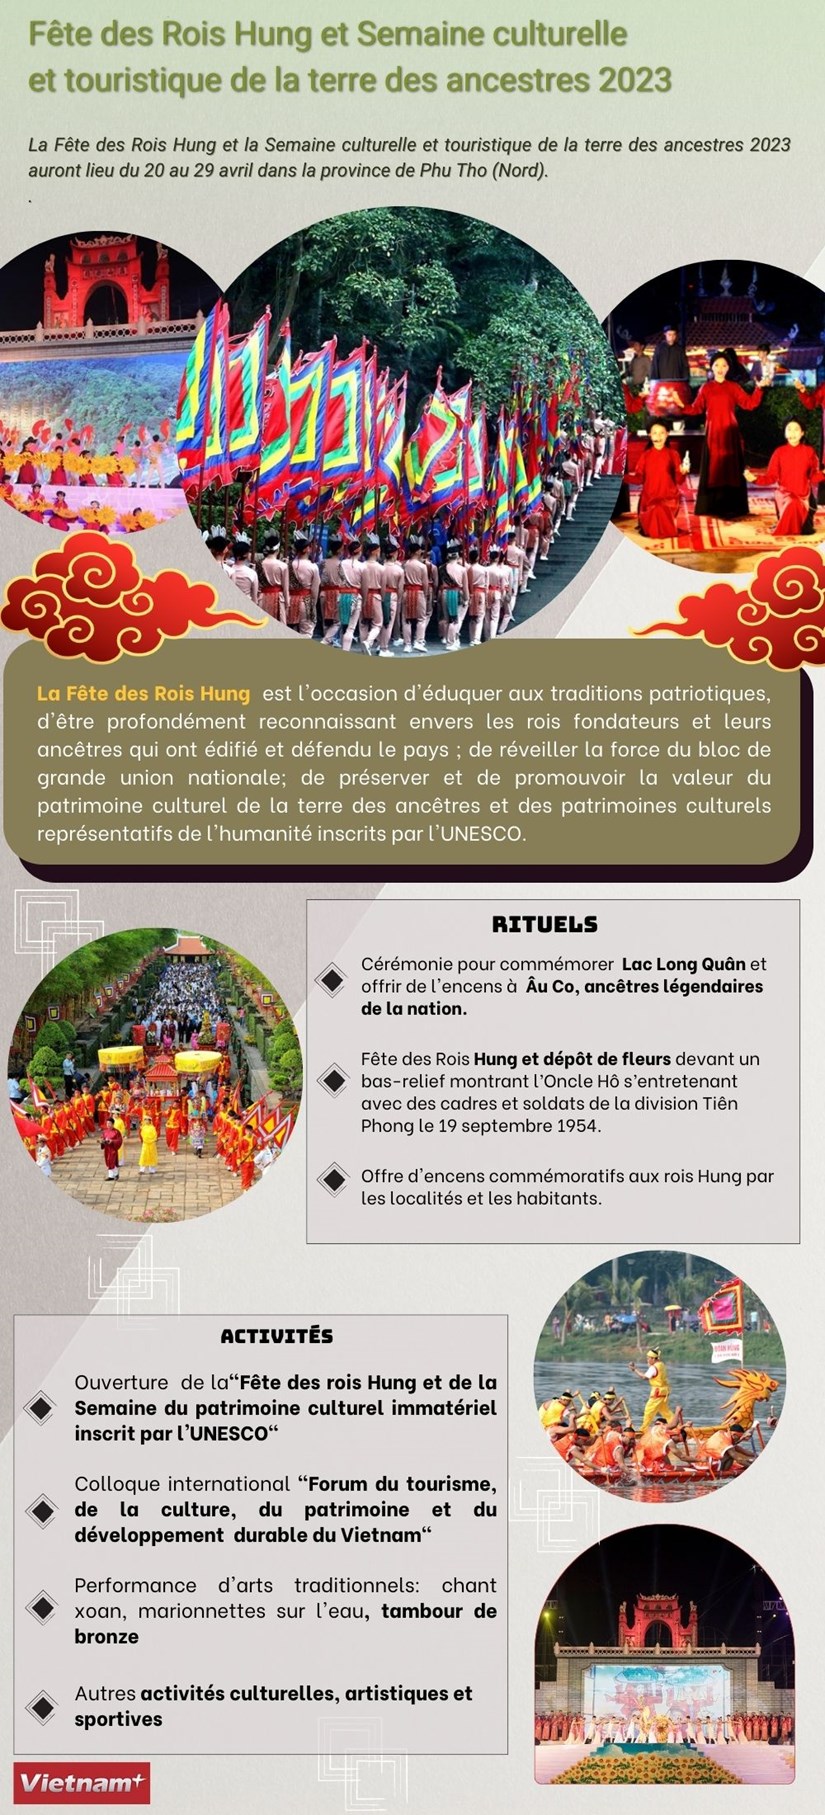 Fete des Rois Hung et Semaine culturelle et touristique de la terre des ancestres 2023 hinh anh 1